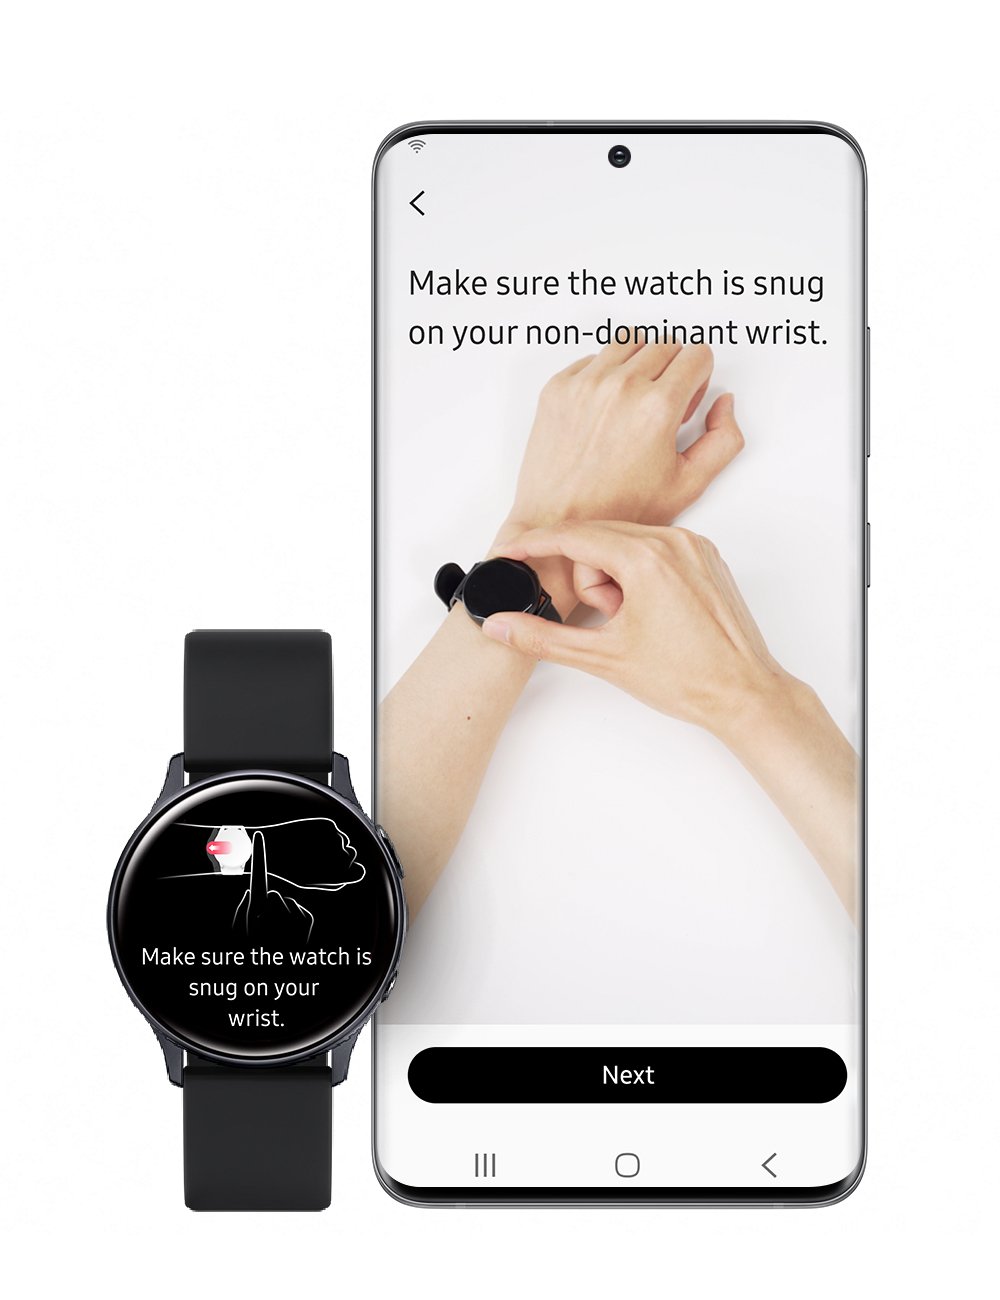 Часы самсунг измерение давления. Самсунг вотч Актив 3. Часы Samsung Health. Самсунг часы Galaxy watch приложение. Samsung Galaxy watch 3 измерение давления.